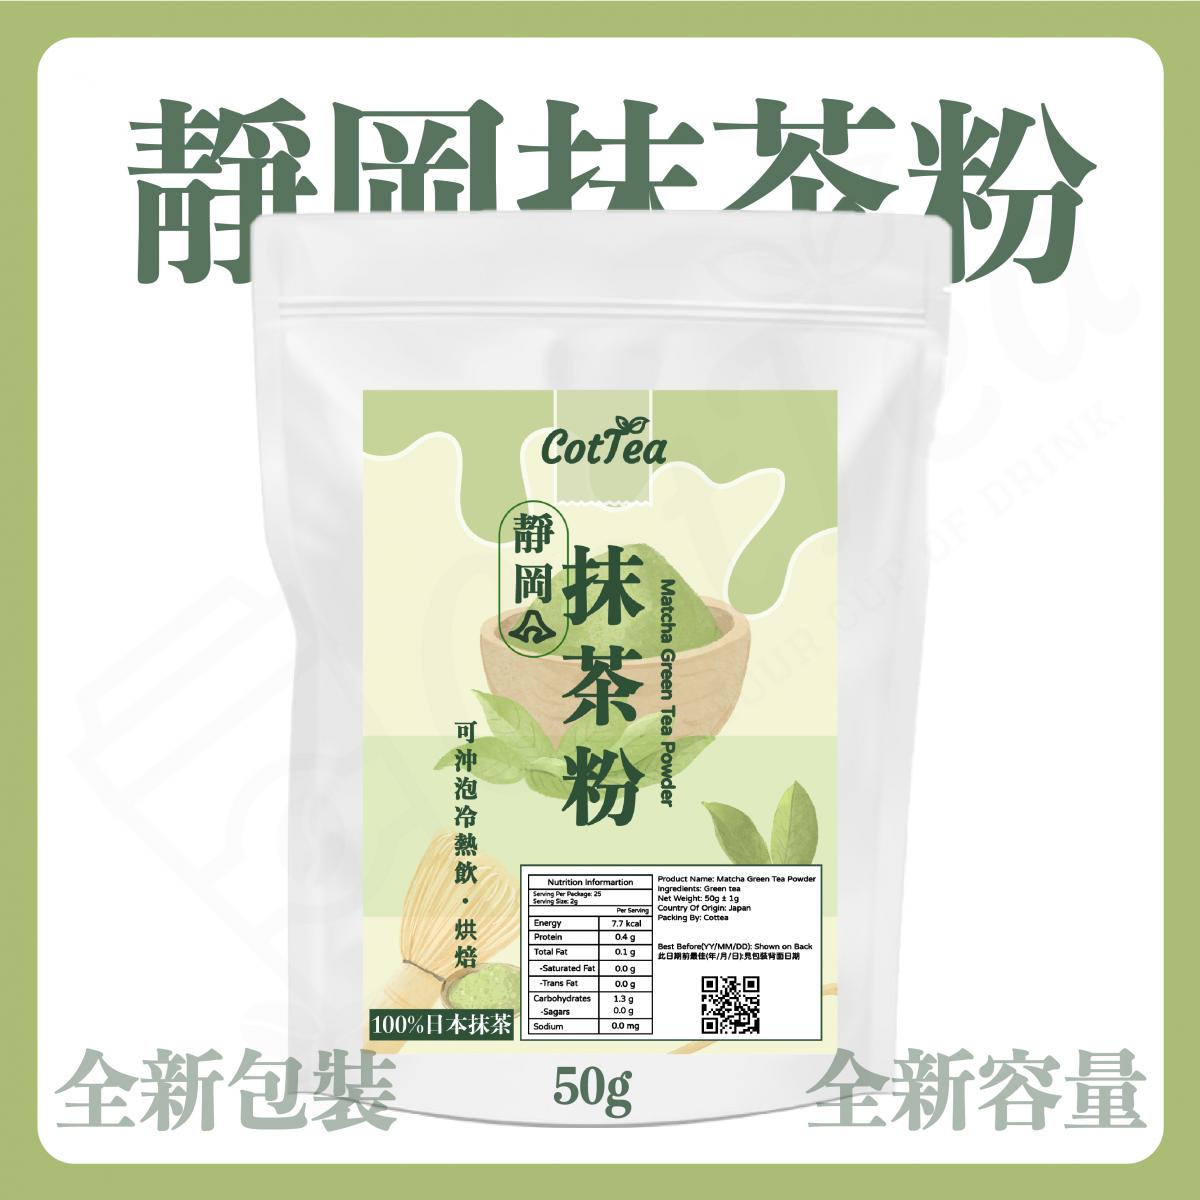 【全新包裝&容量】日本純抹茶粉 50g